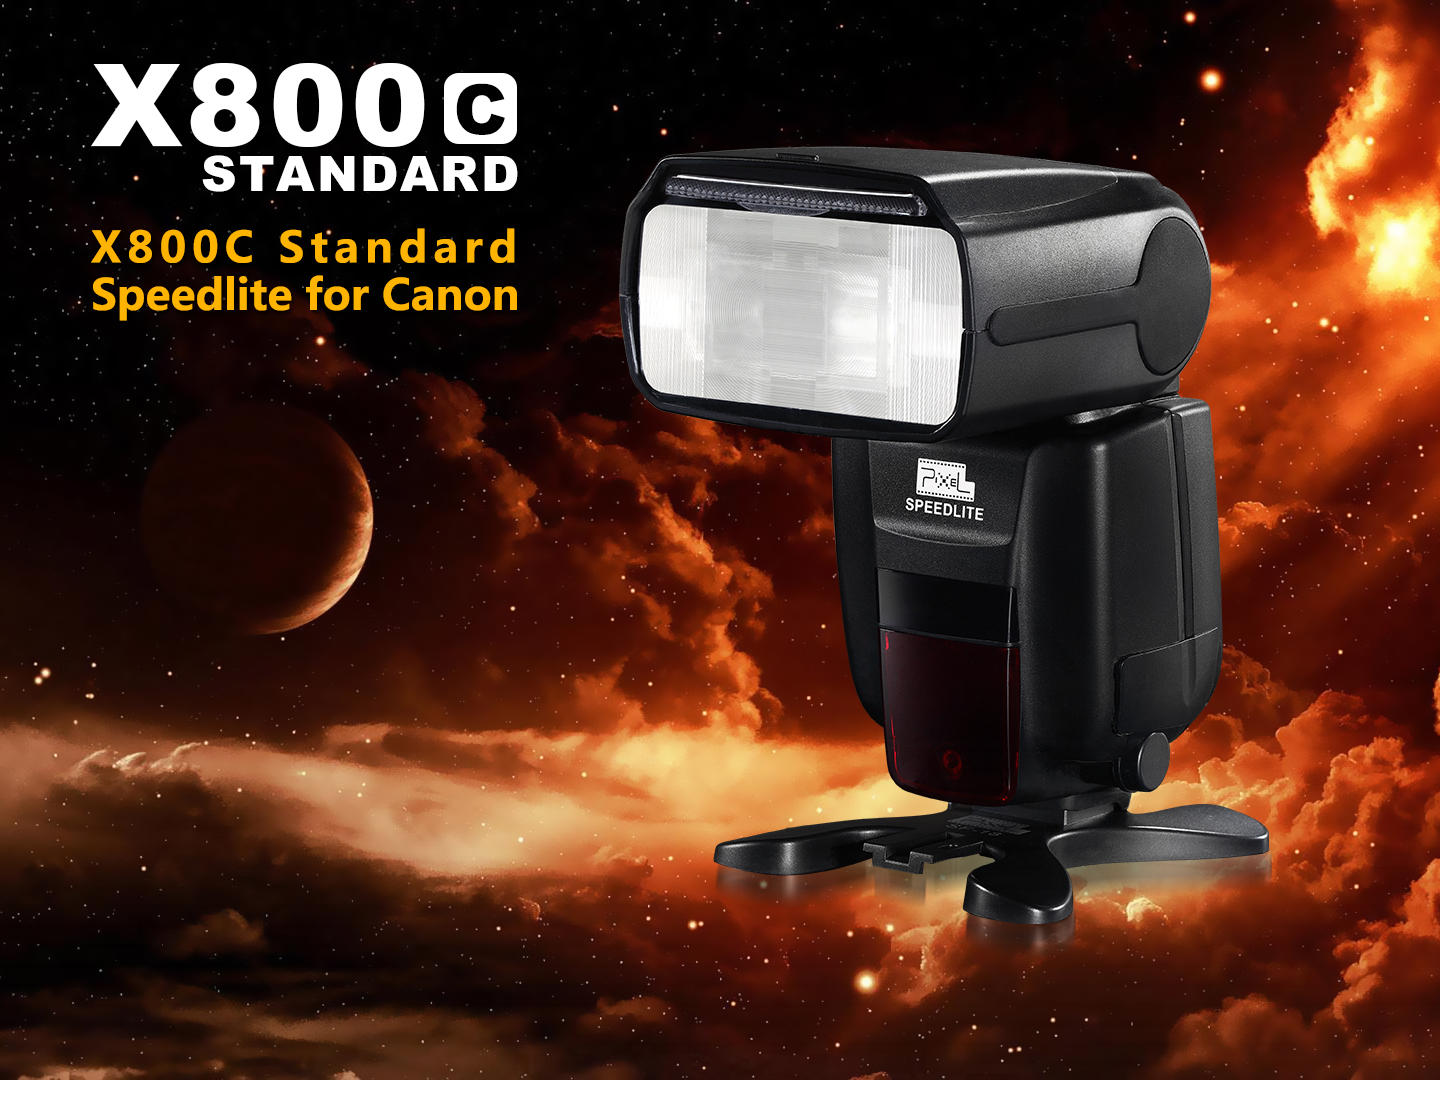 X800C Standard Speedlite for Canon